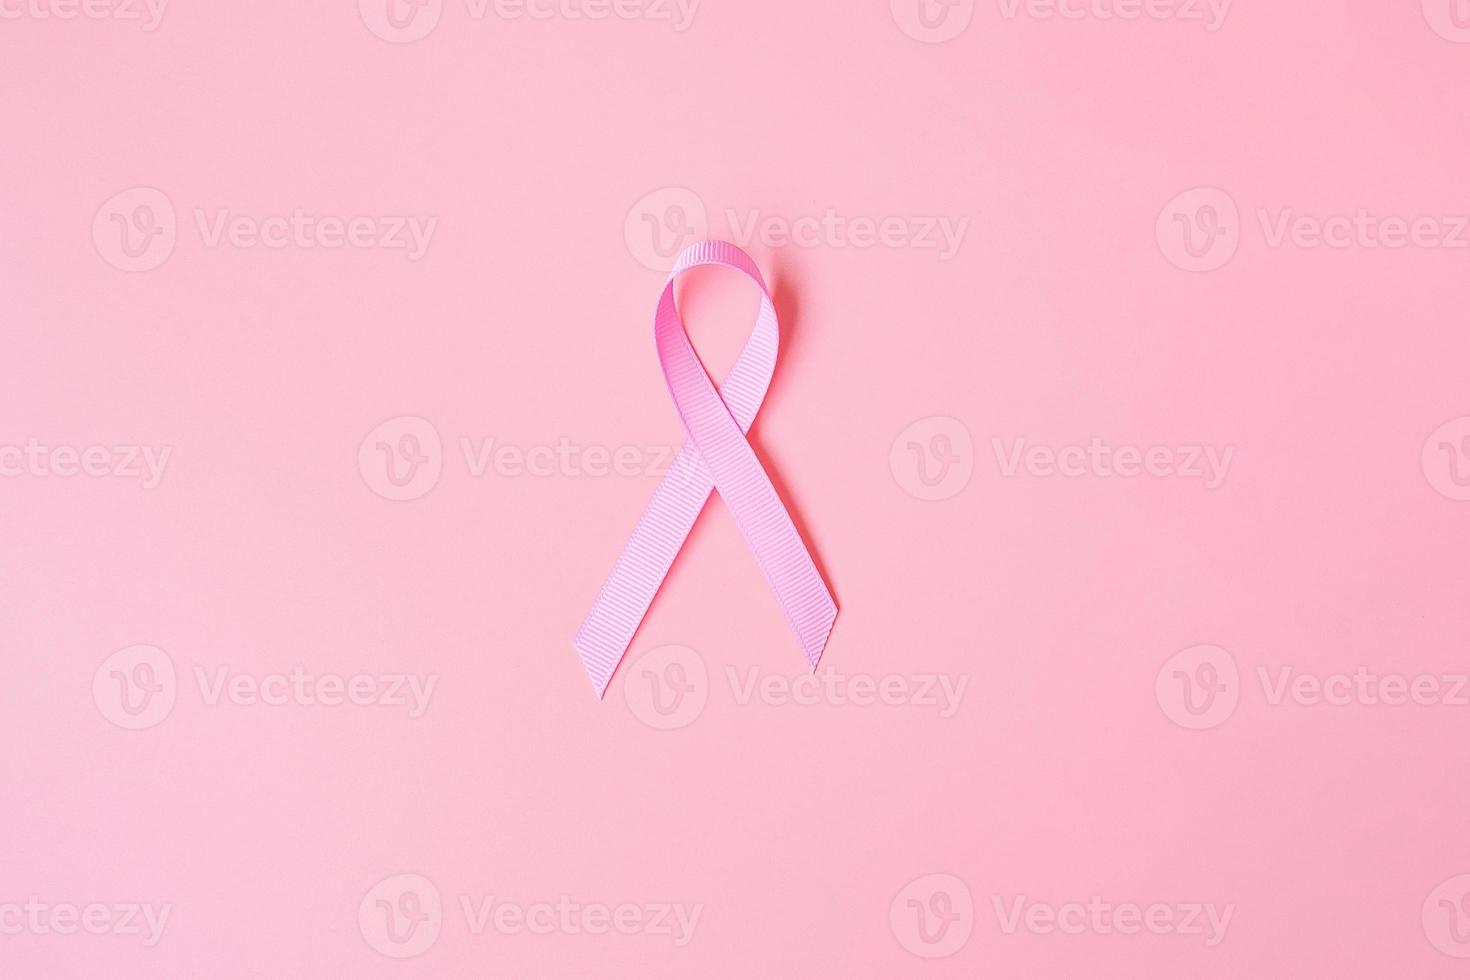 oktober borstkanker bewustzijn maand, roze lint op roze achtergrond voor het ondersteunen van mensen die leven en ziekte. internationaal vrouwen-, moeder- en wereldkankerdagconcept foto